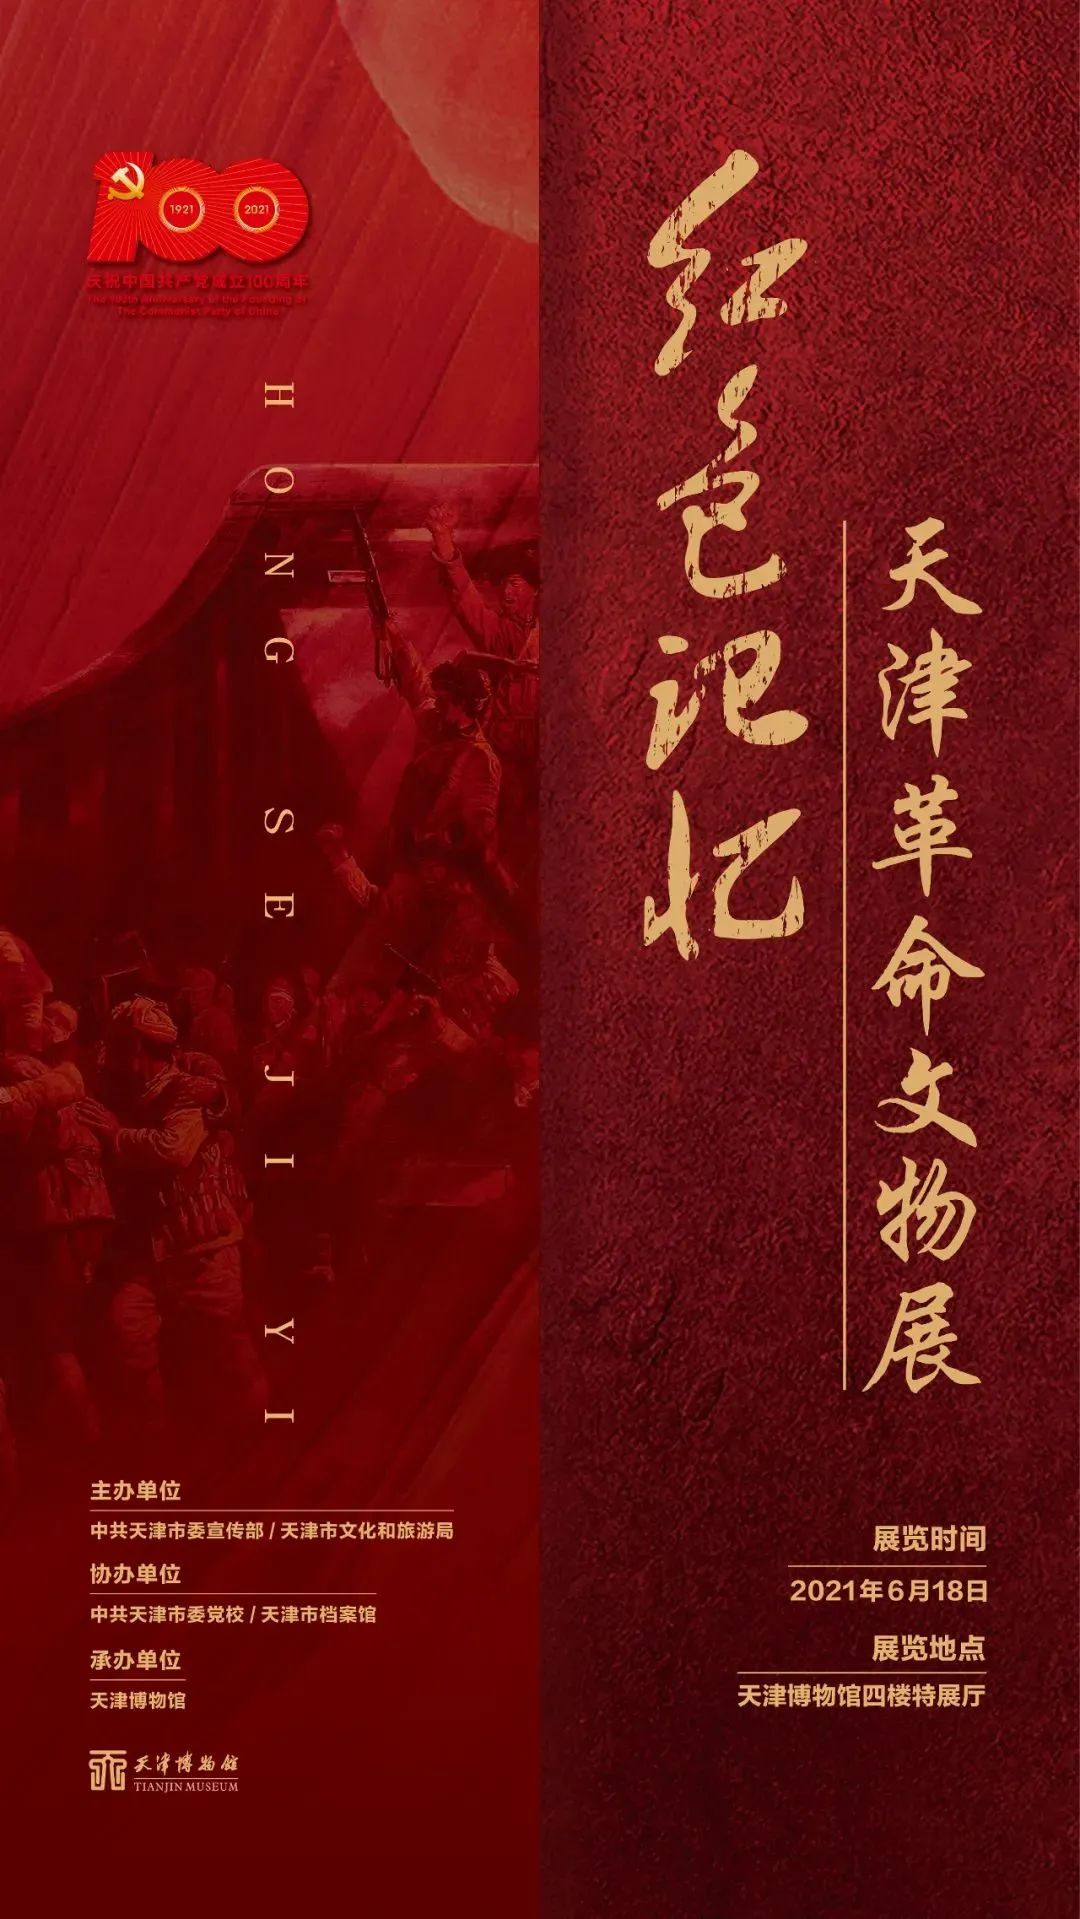 展览地点:天津博物馆 红色记忆——天津革命文物展